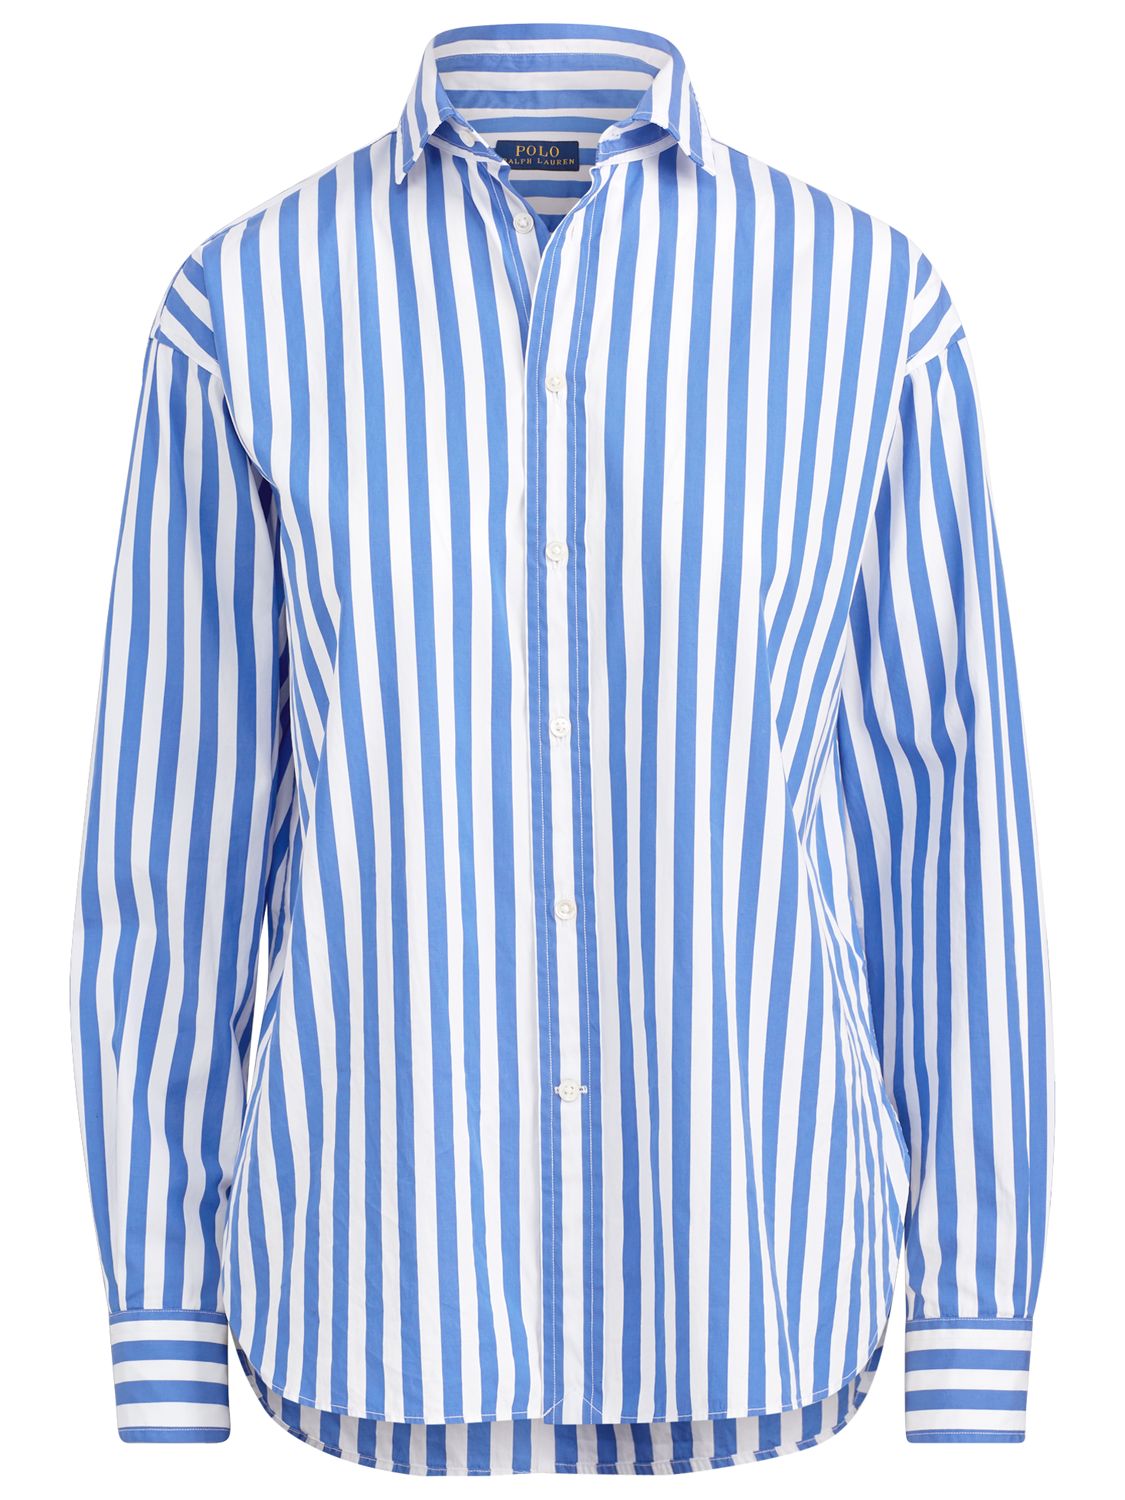 polo ralph lauren striped shirt